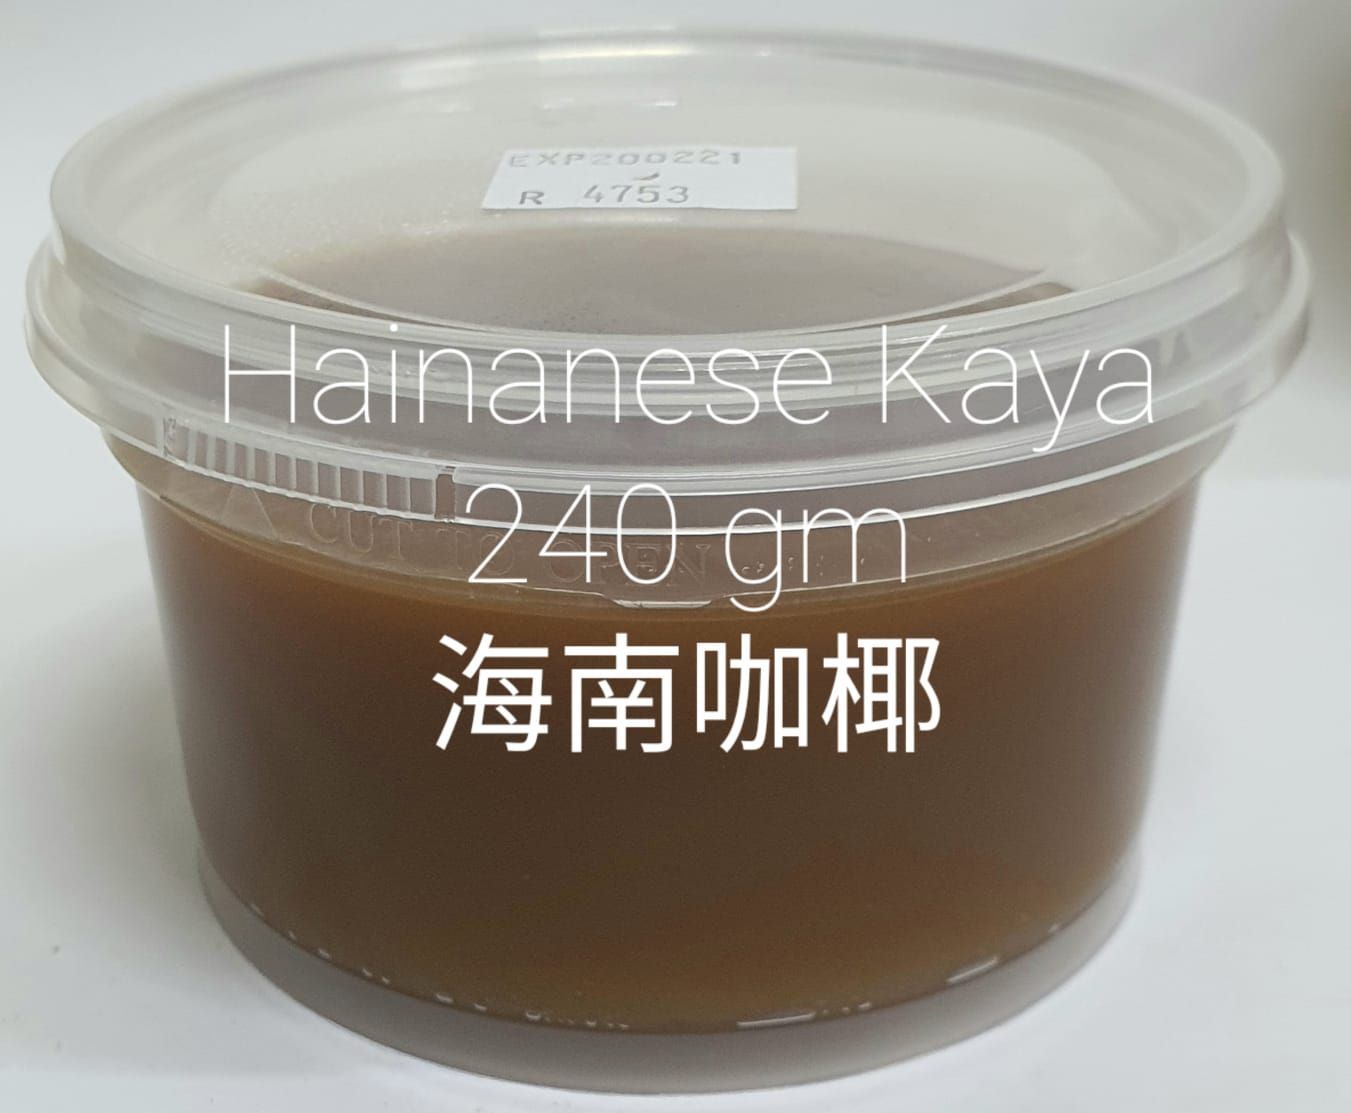  Hainanese Kaya Brown 240gm/ Cup 